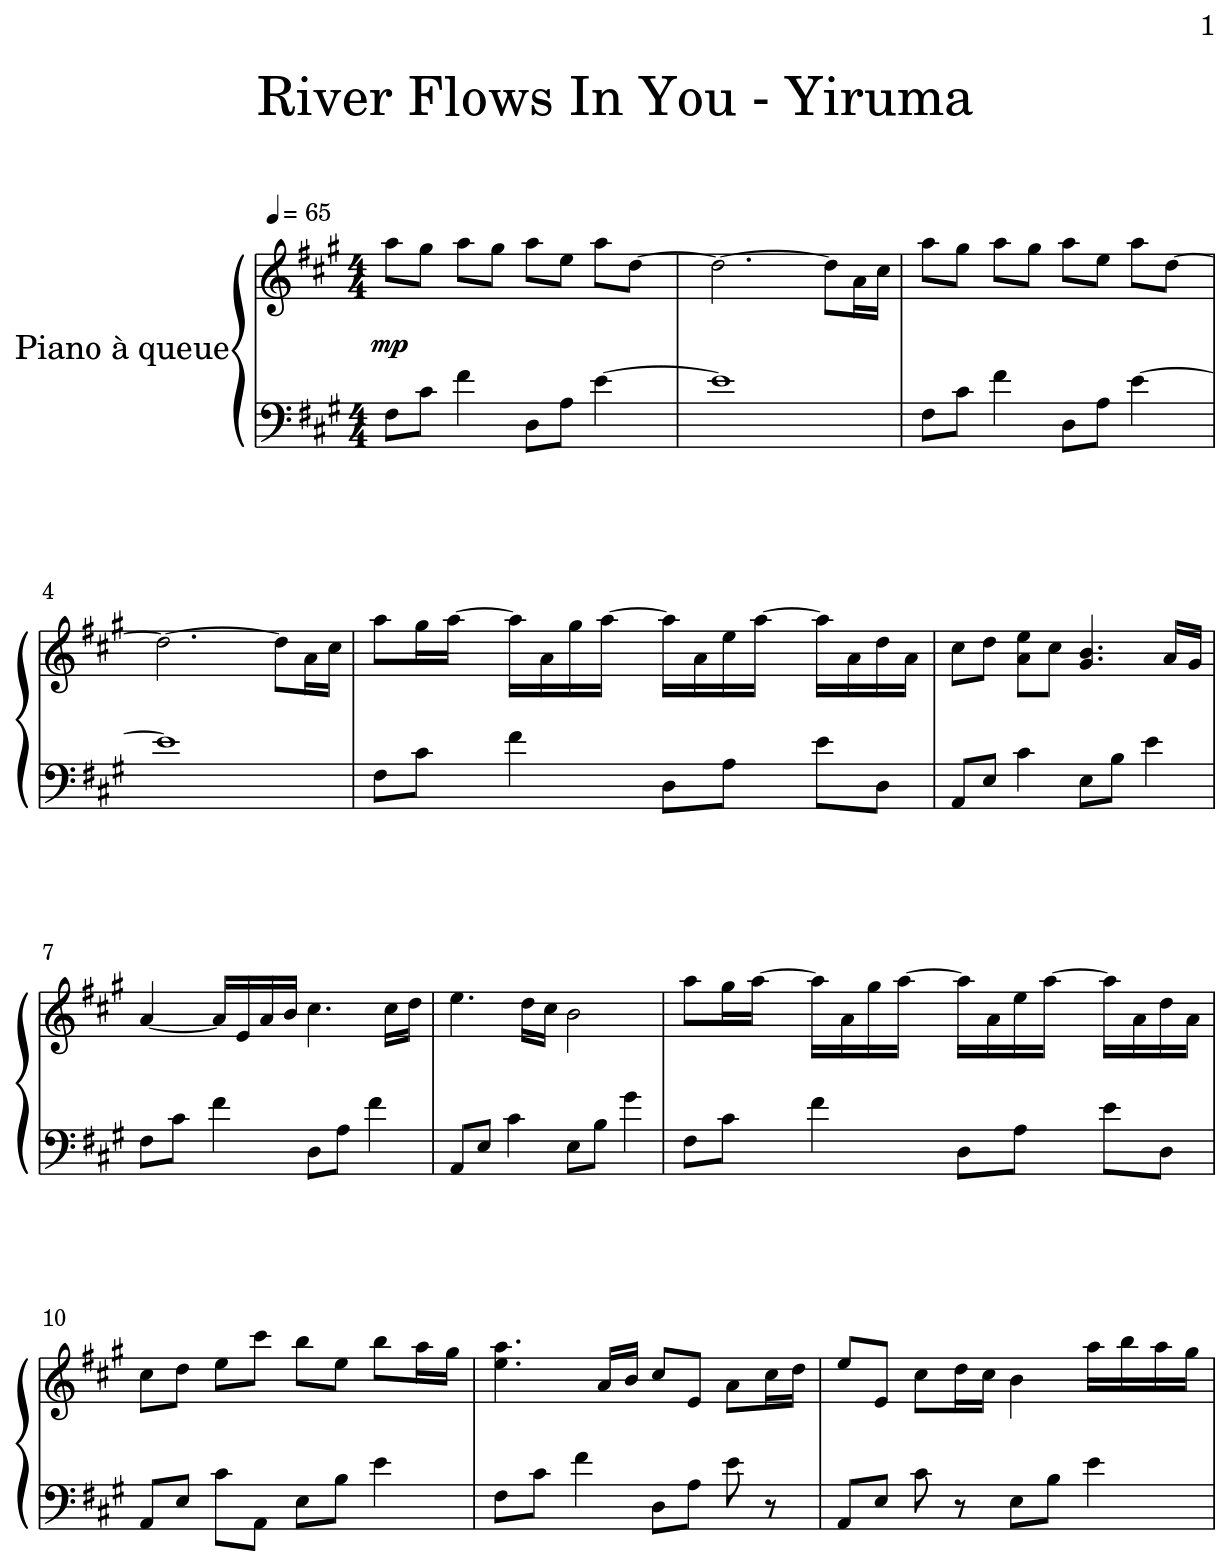 River Flows In You - Yiruma - Sheet music for Piano